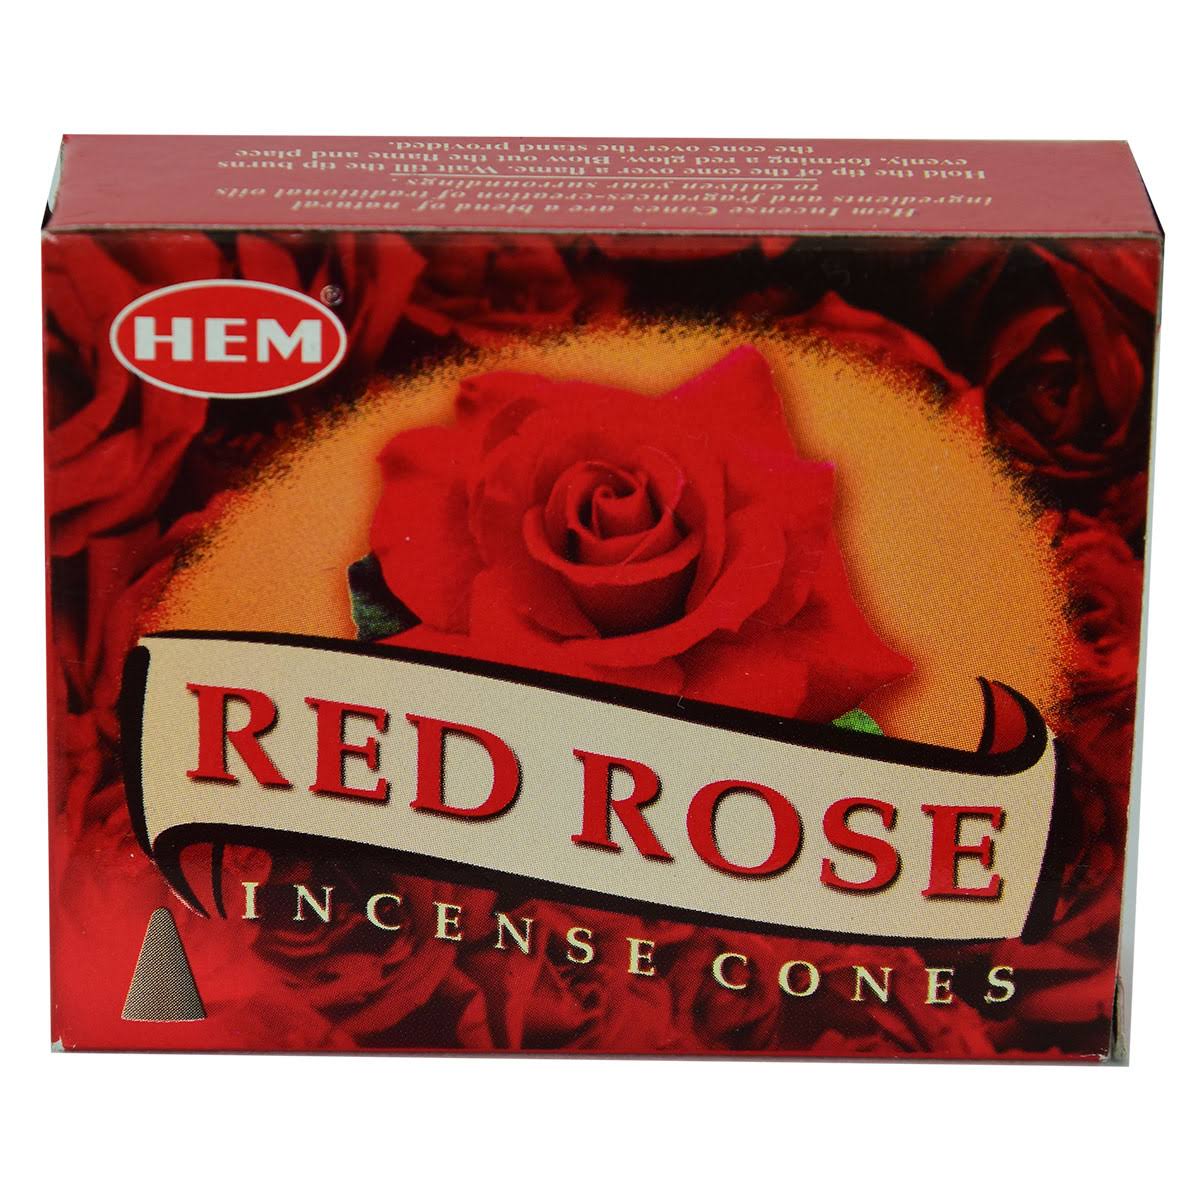 Hem Red Rose Incense Cones